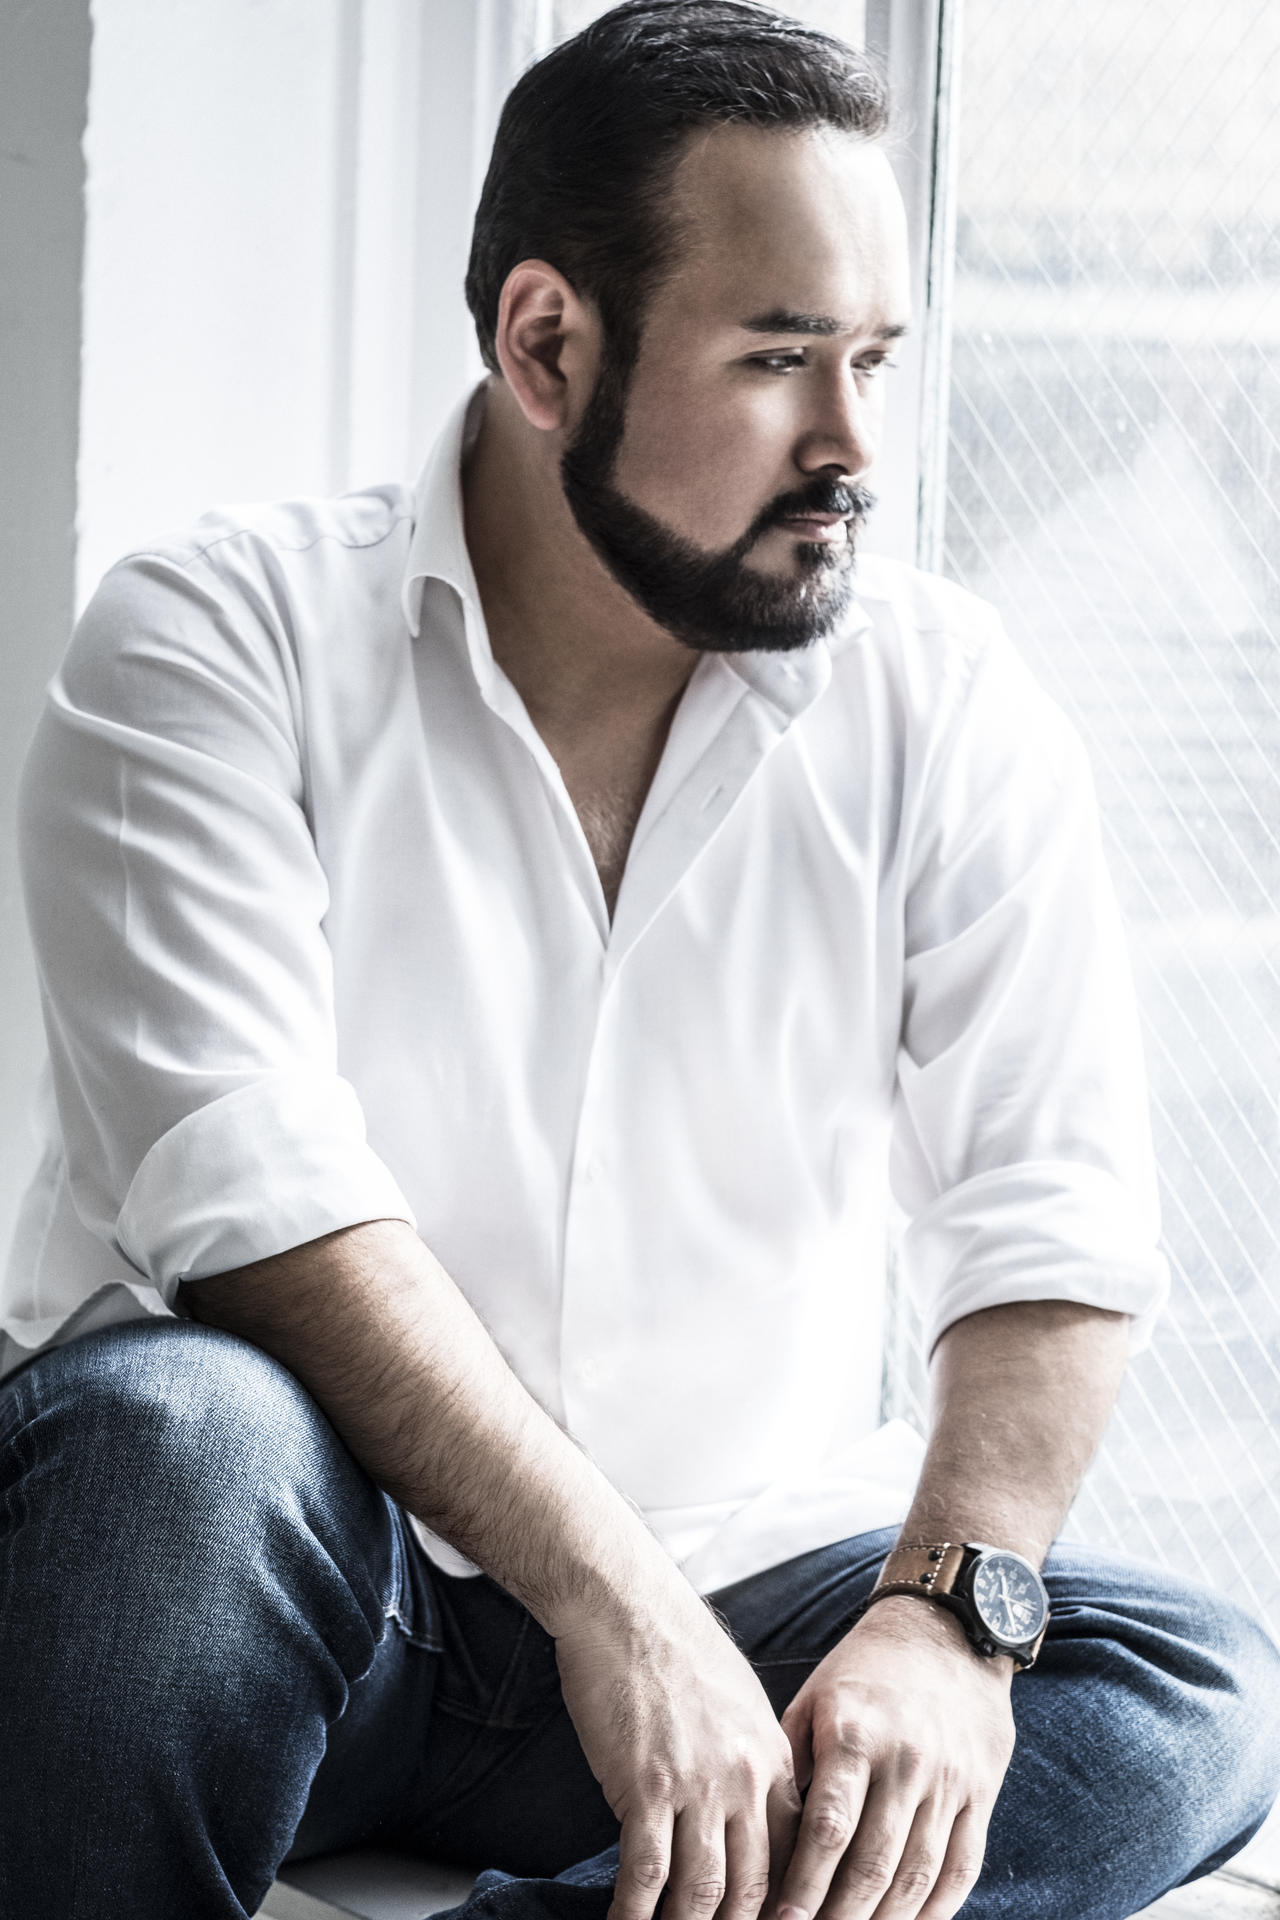 El último tramo de 2021 será de intenso trabajo para el reconocido tenor mexicano Javier Camarena. Su agenda de cierre contempla presentaciones internacionales al lado de importantes músicos.
